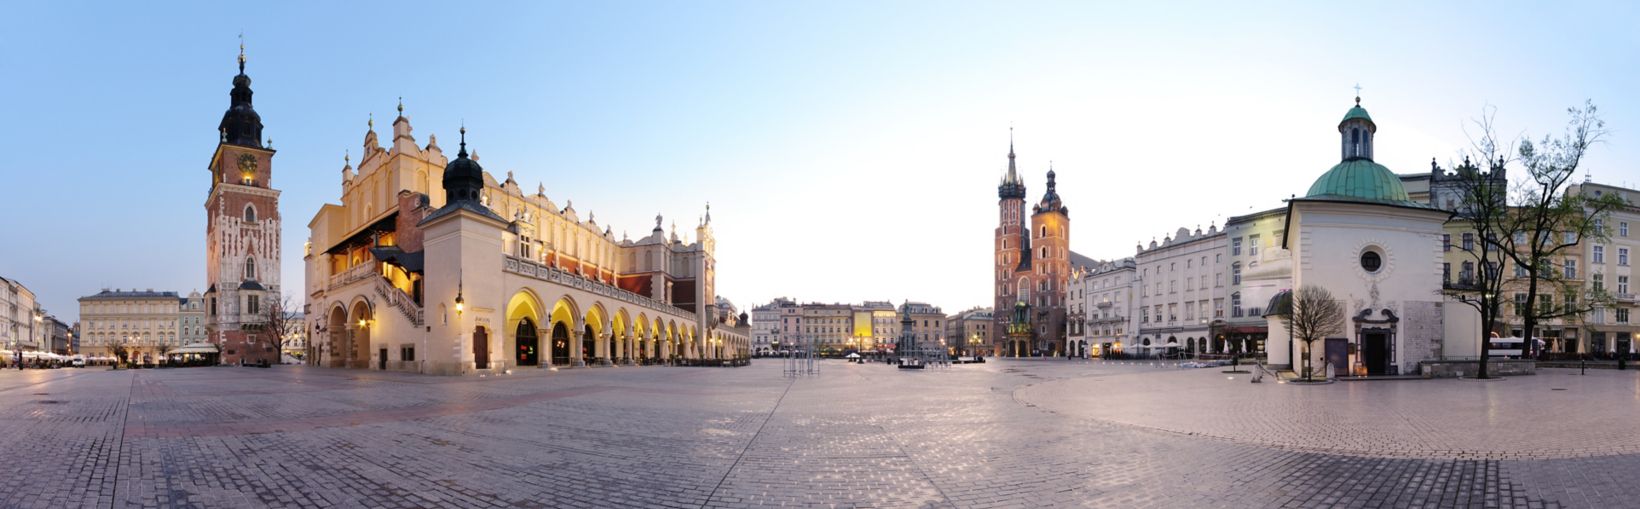 Place de la ville de Cracovie, en Pologne, à l’aube